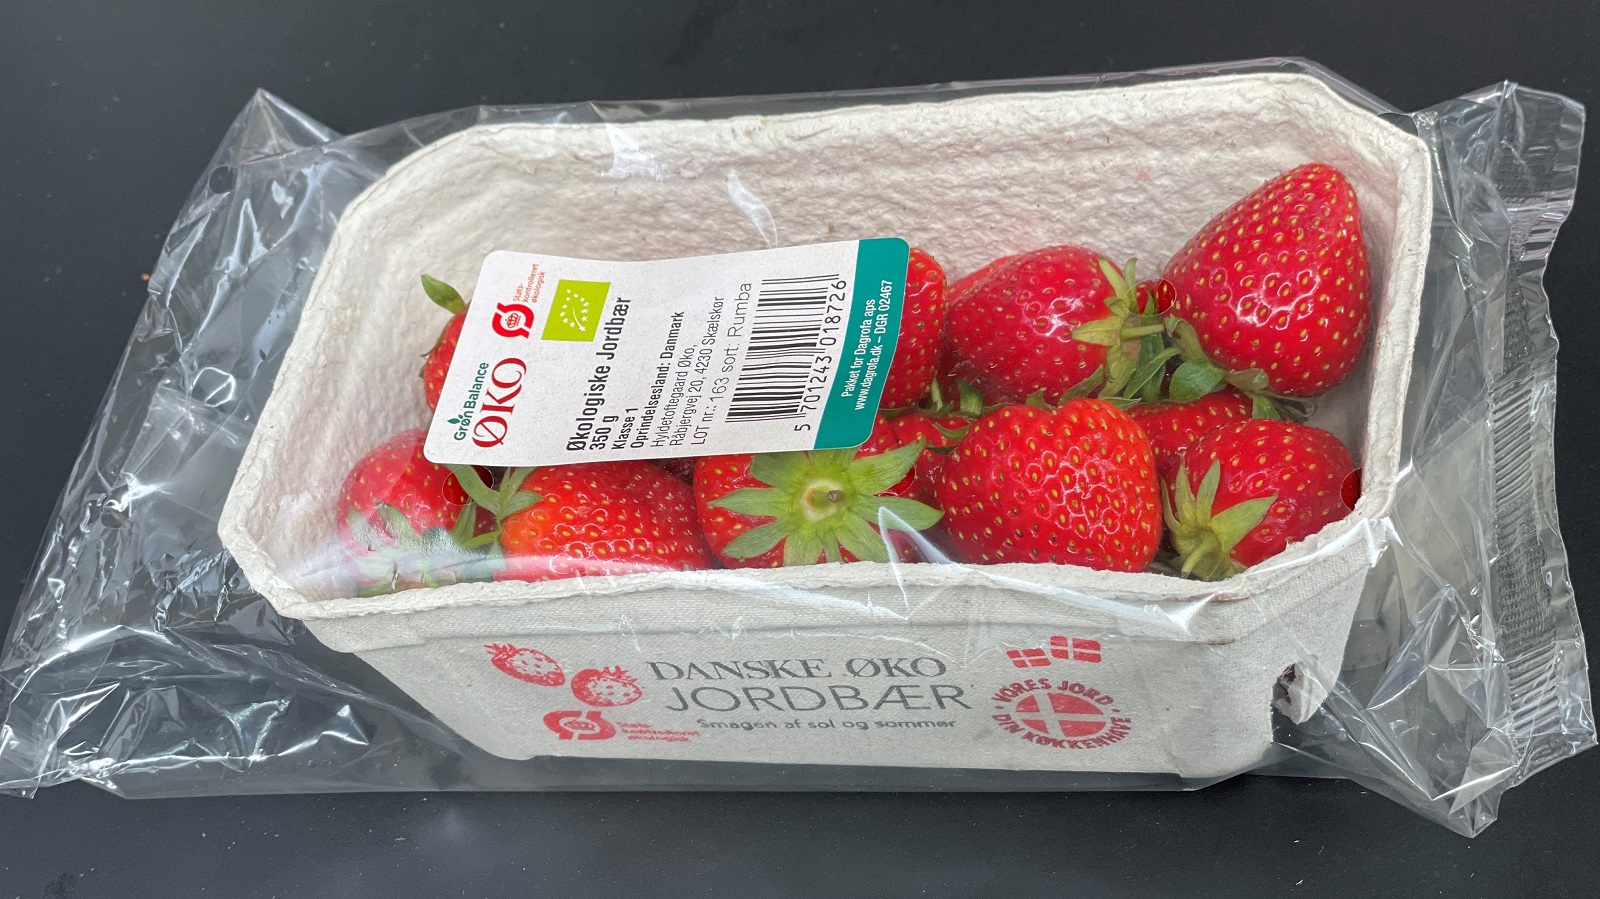 Bakke med økologiske jordbær fra dansk økolog